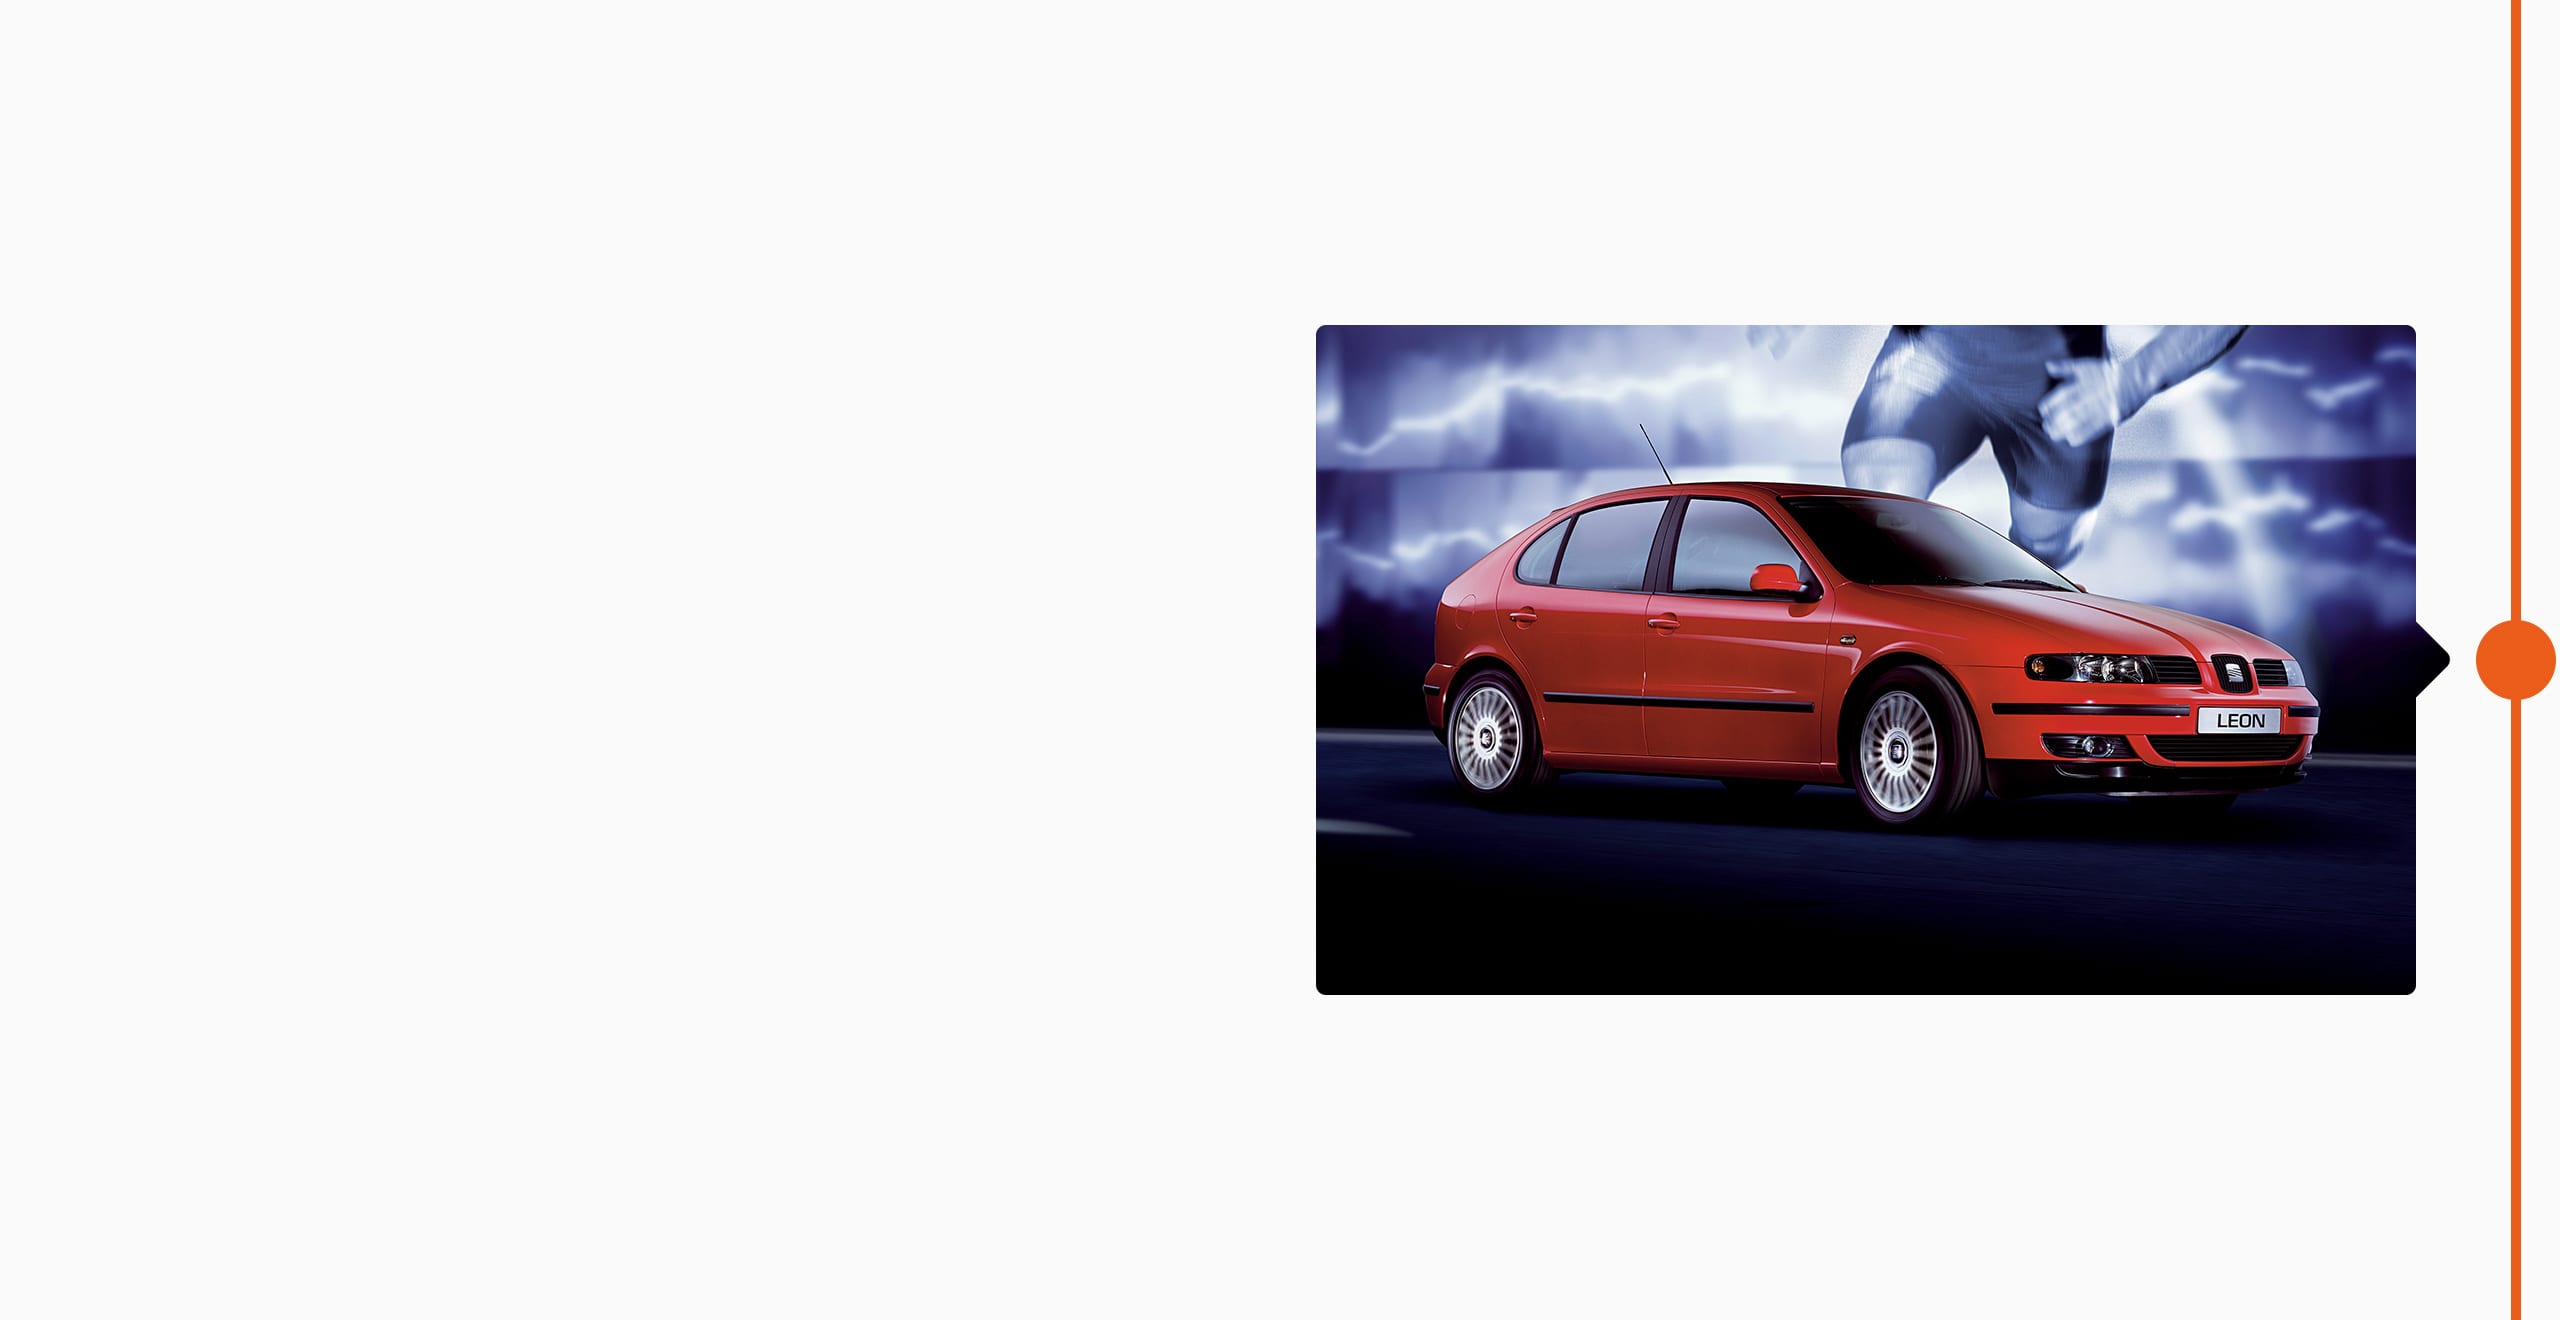 La storia del marchio SEAT: 1999 - SEAT Leon originale